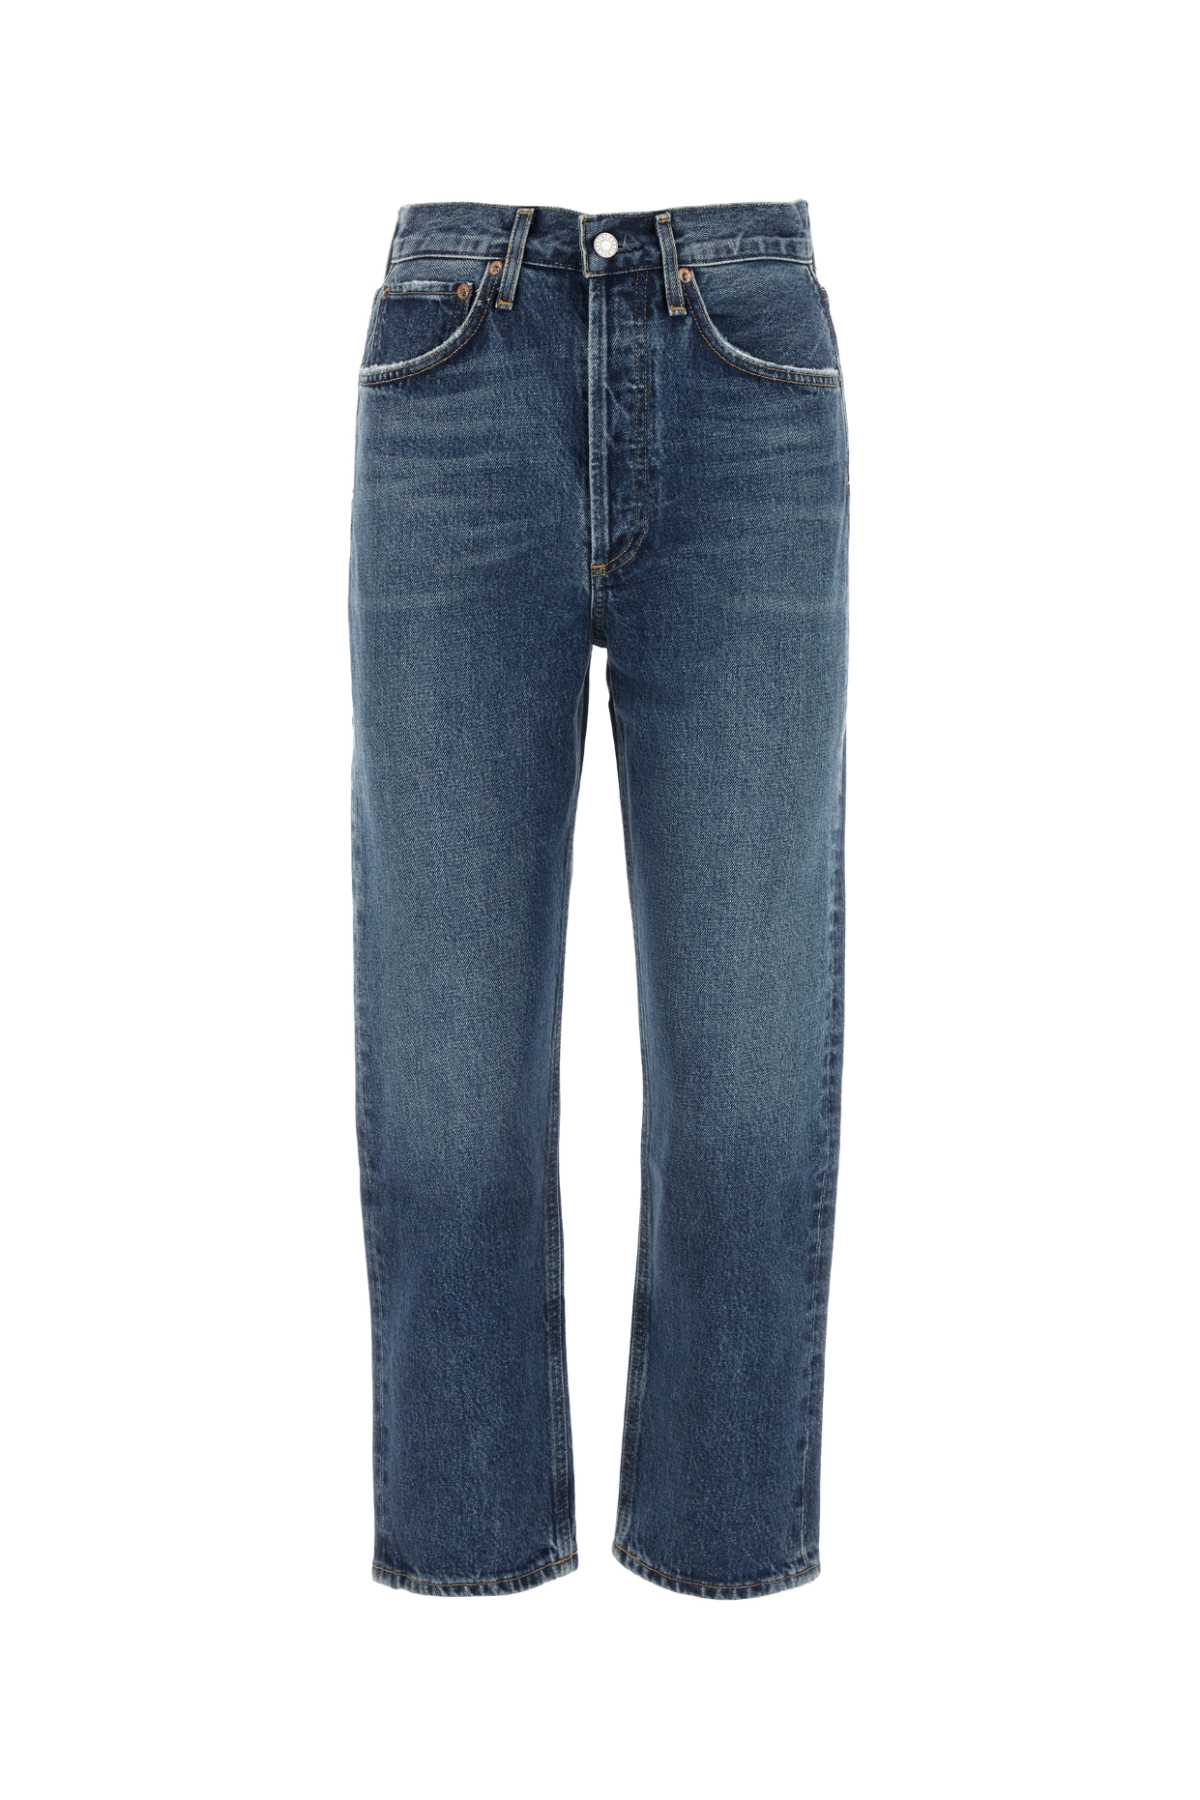 Denim 90s Crop Jeans